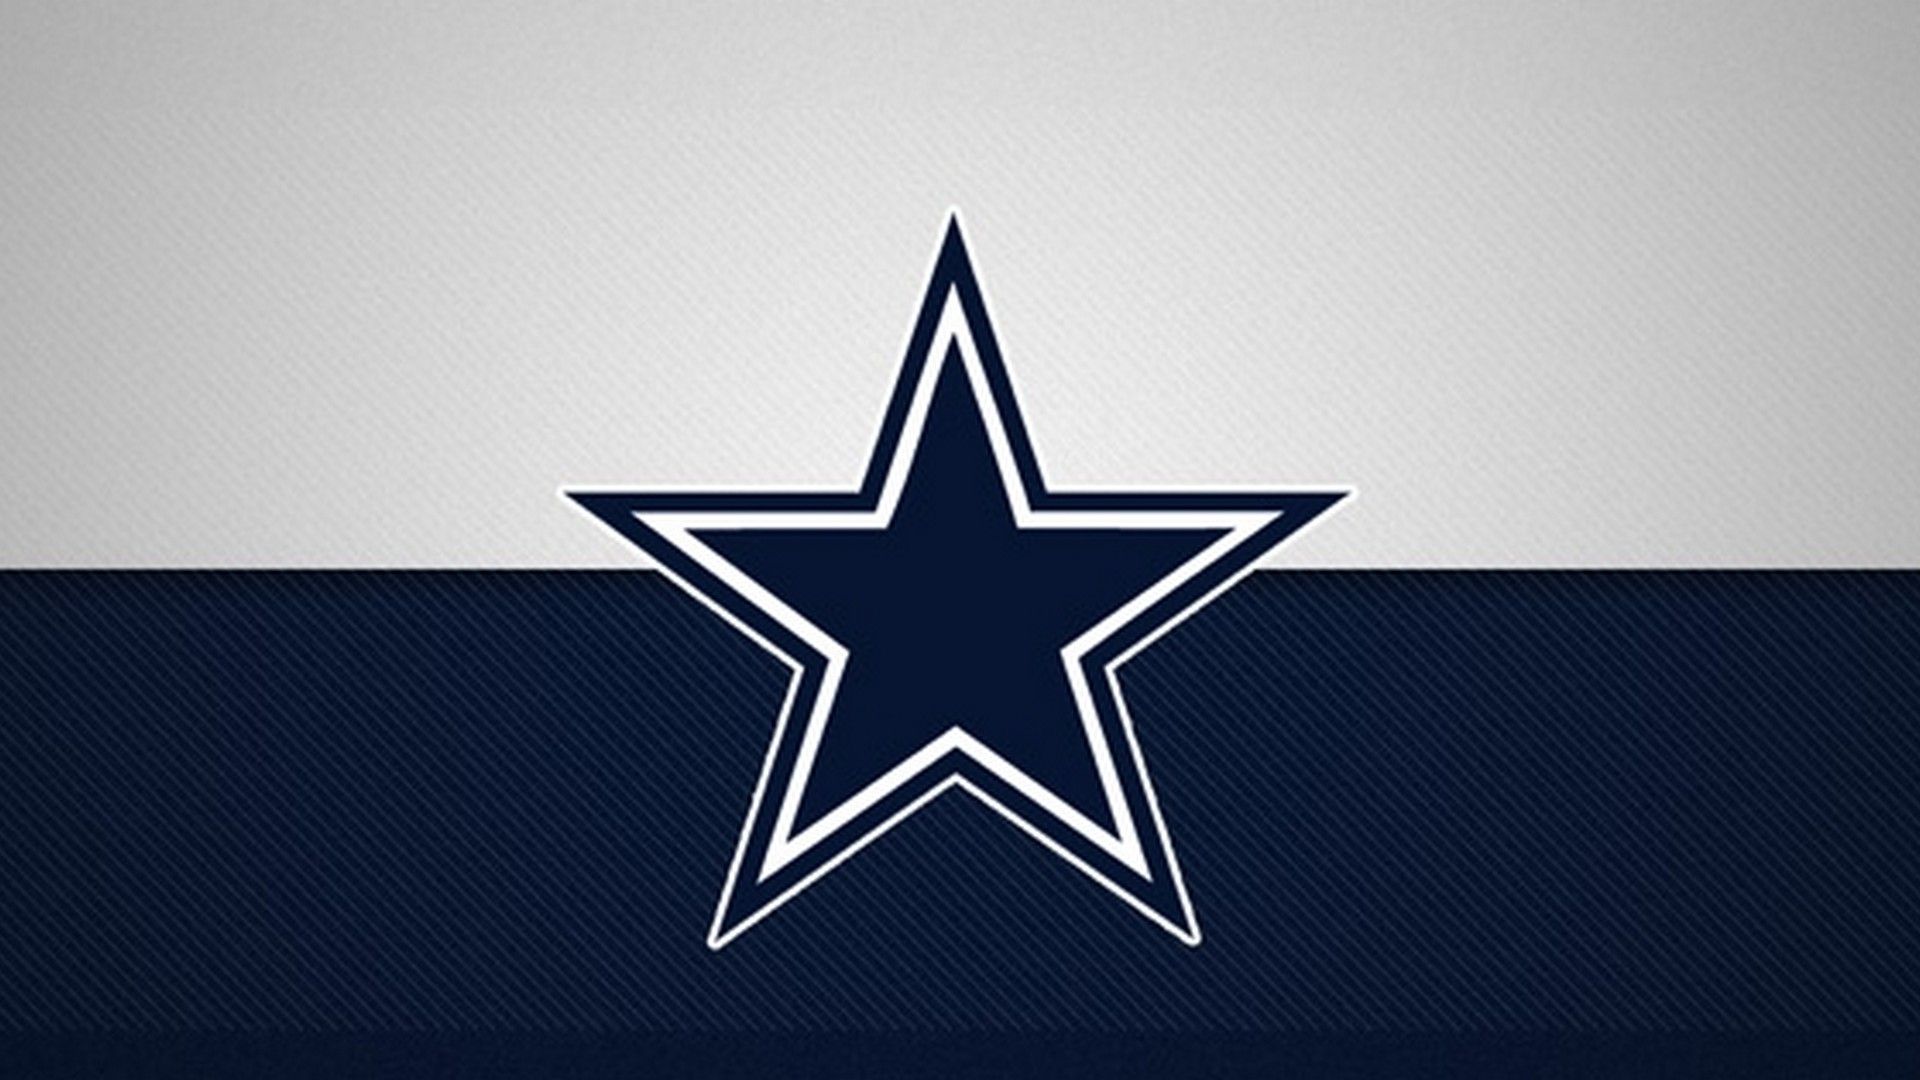 Free download Wallpaper Desktop Dallas Cowboys HD 2020 NFL Football